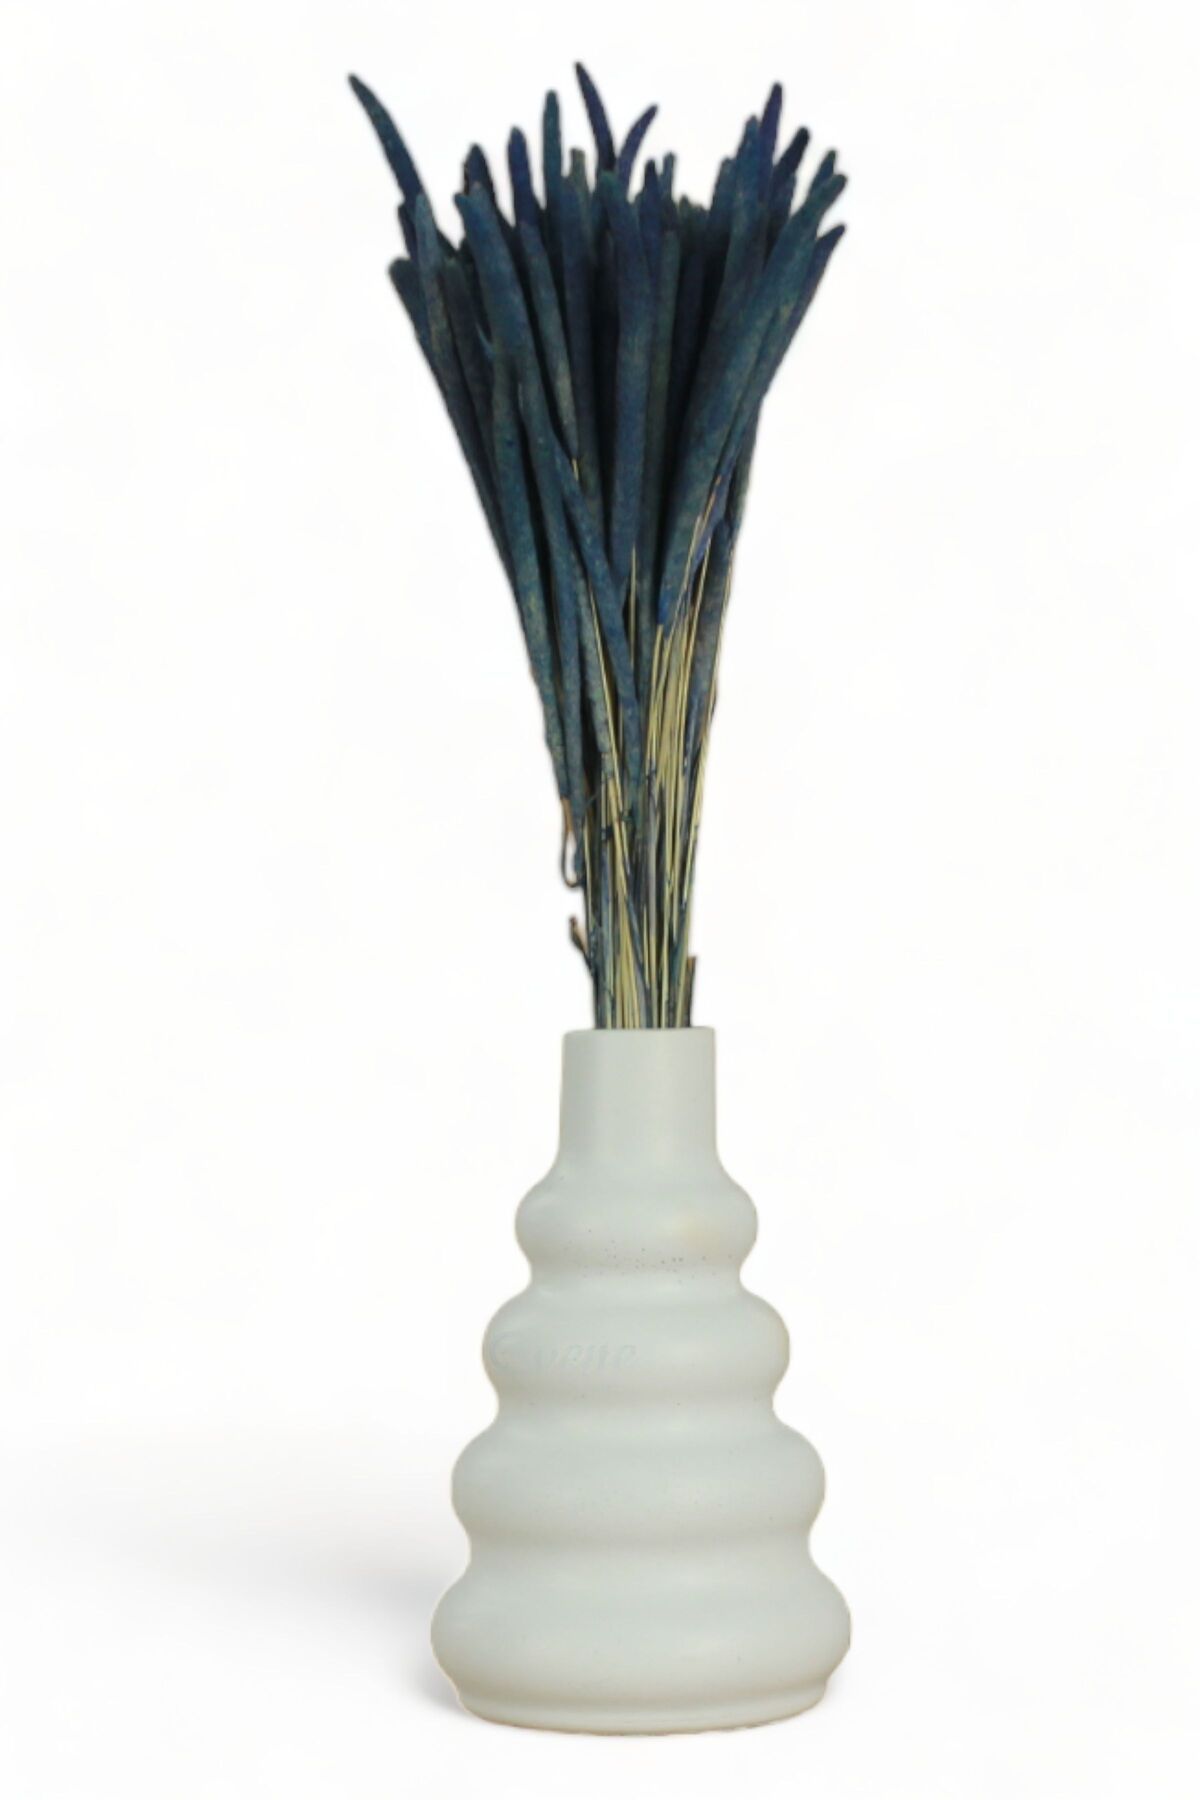 Evene Vazo Küçük Vazo Masa Üstü Vazo Ev Dekorasyon Vazo Model 8